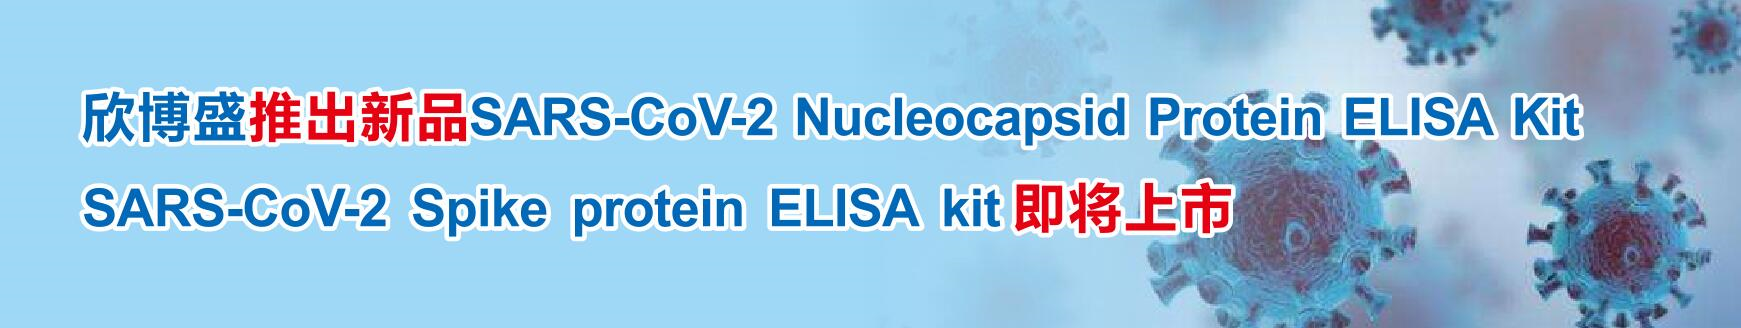 3868la银河总站推出新品SARS-CoV-2 Nucleocapsid Protein ELISA Kit